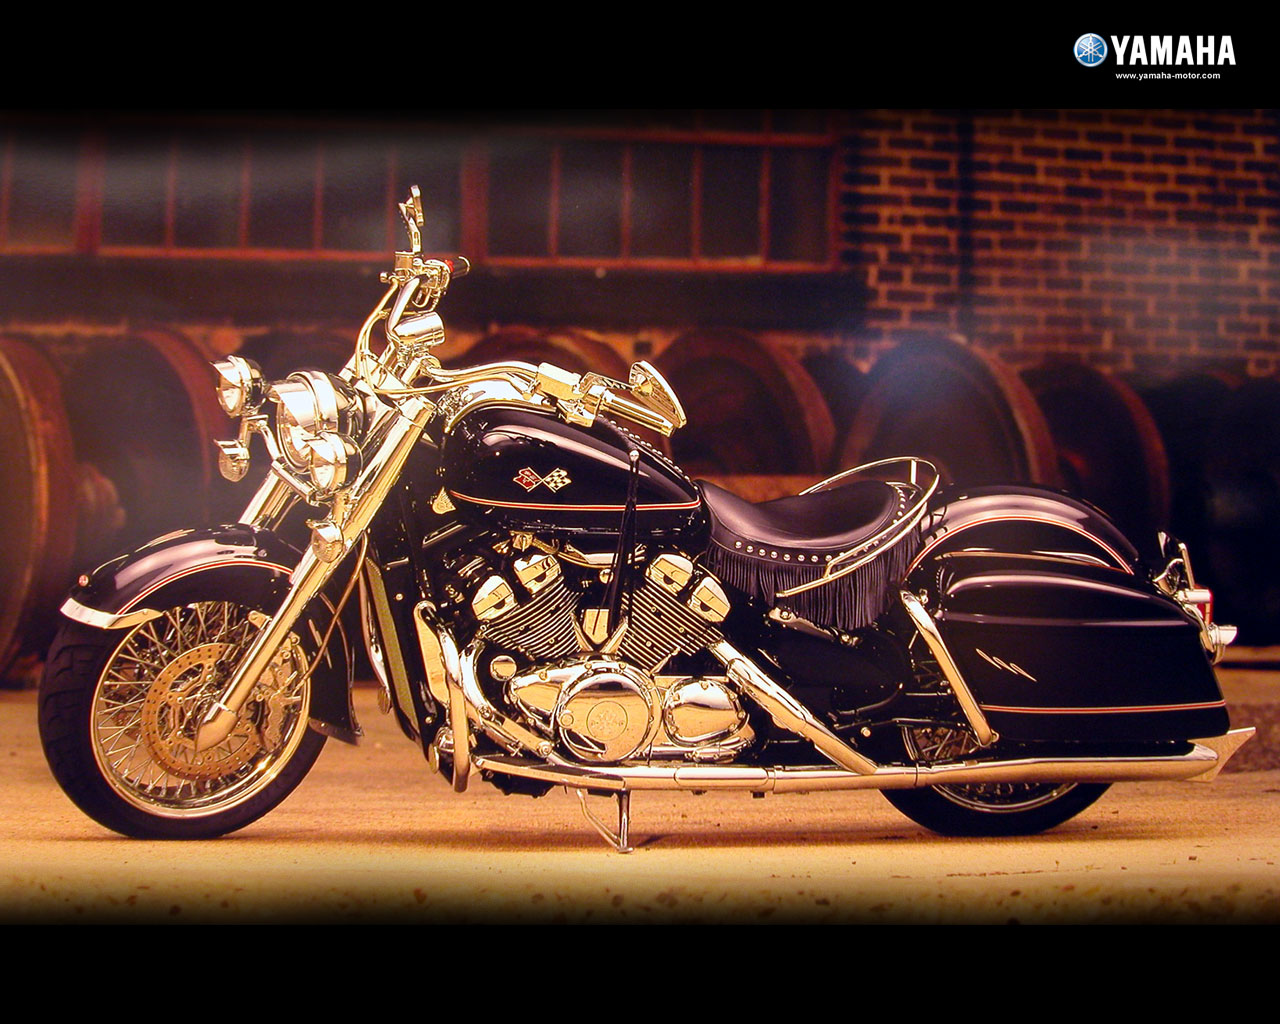 壁纸1280x1024Yamaha摩托车 11年经典车型 壁纸9壁纸 Yamaha摩托车-壁纸 Yamaha摩托车-图片 Yamaha摩托车-素材 静物壁纸 静物图库 静物图片素材桌面壁纸